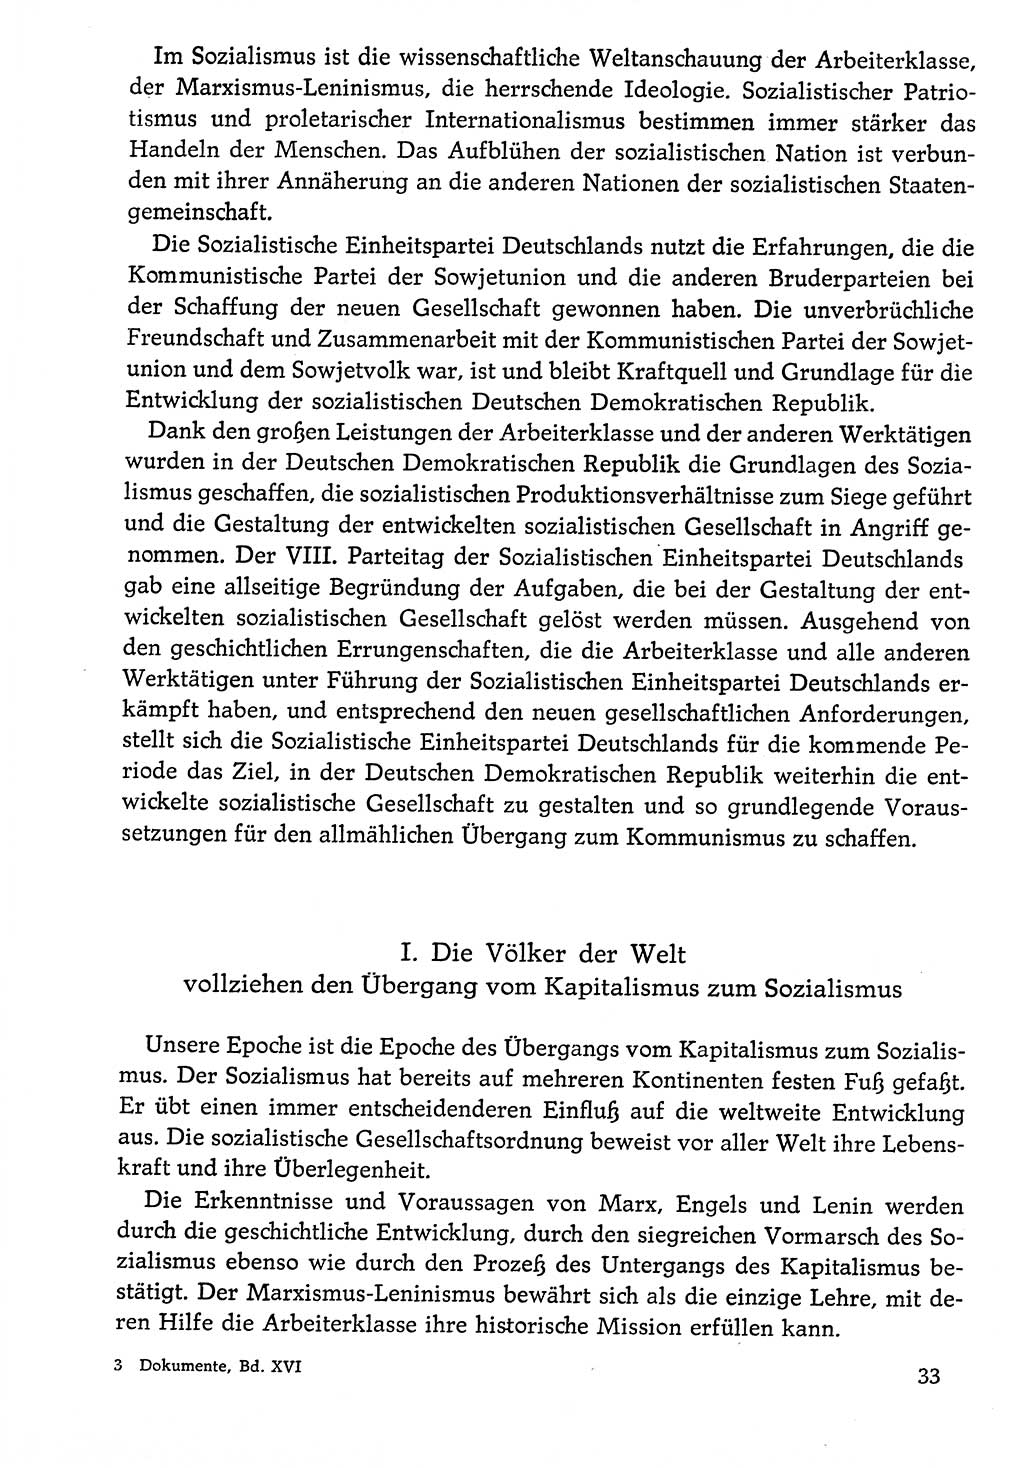 Dokumente der Sozialistischen Einheitspartei Deutschlands (SED) [Deutsche Demokratische Republik (DDR)] 1976-1977, Seite 33 (Dok. SED DDR 1976-1977, S. 33)